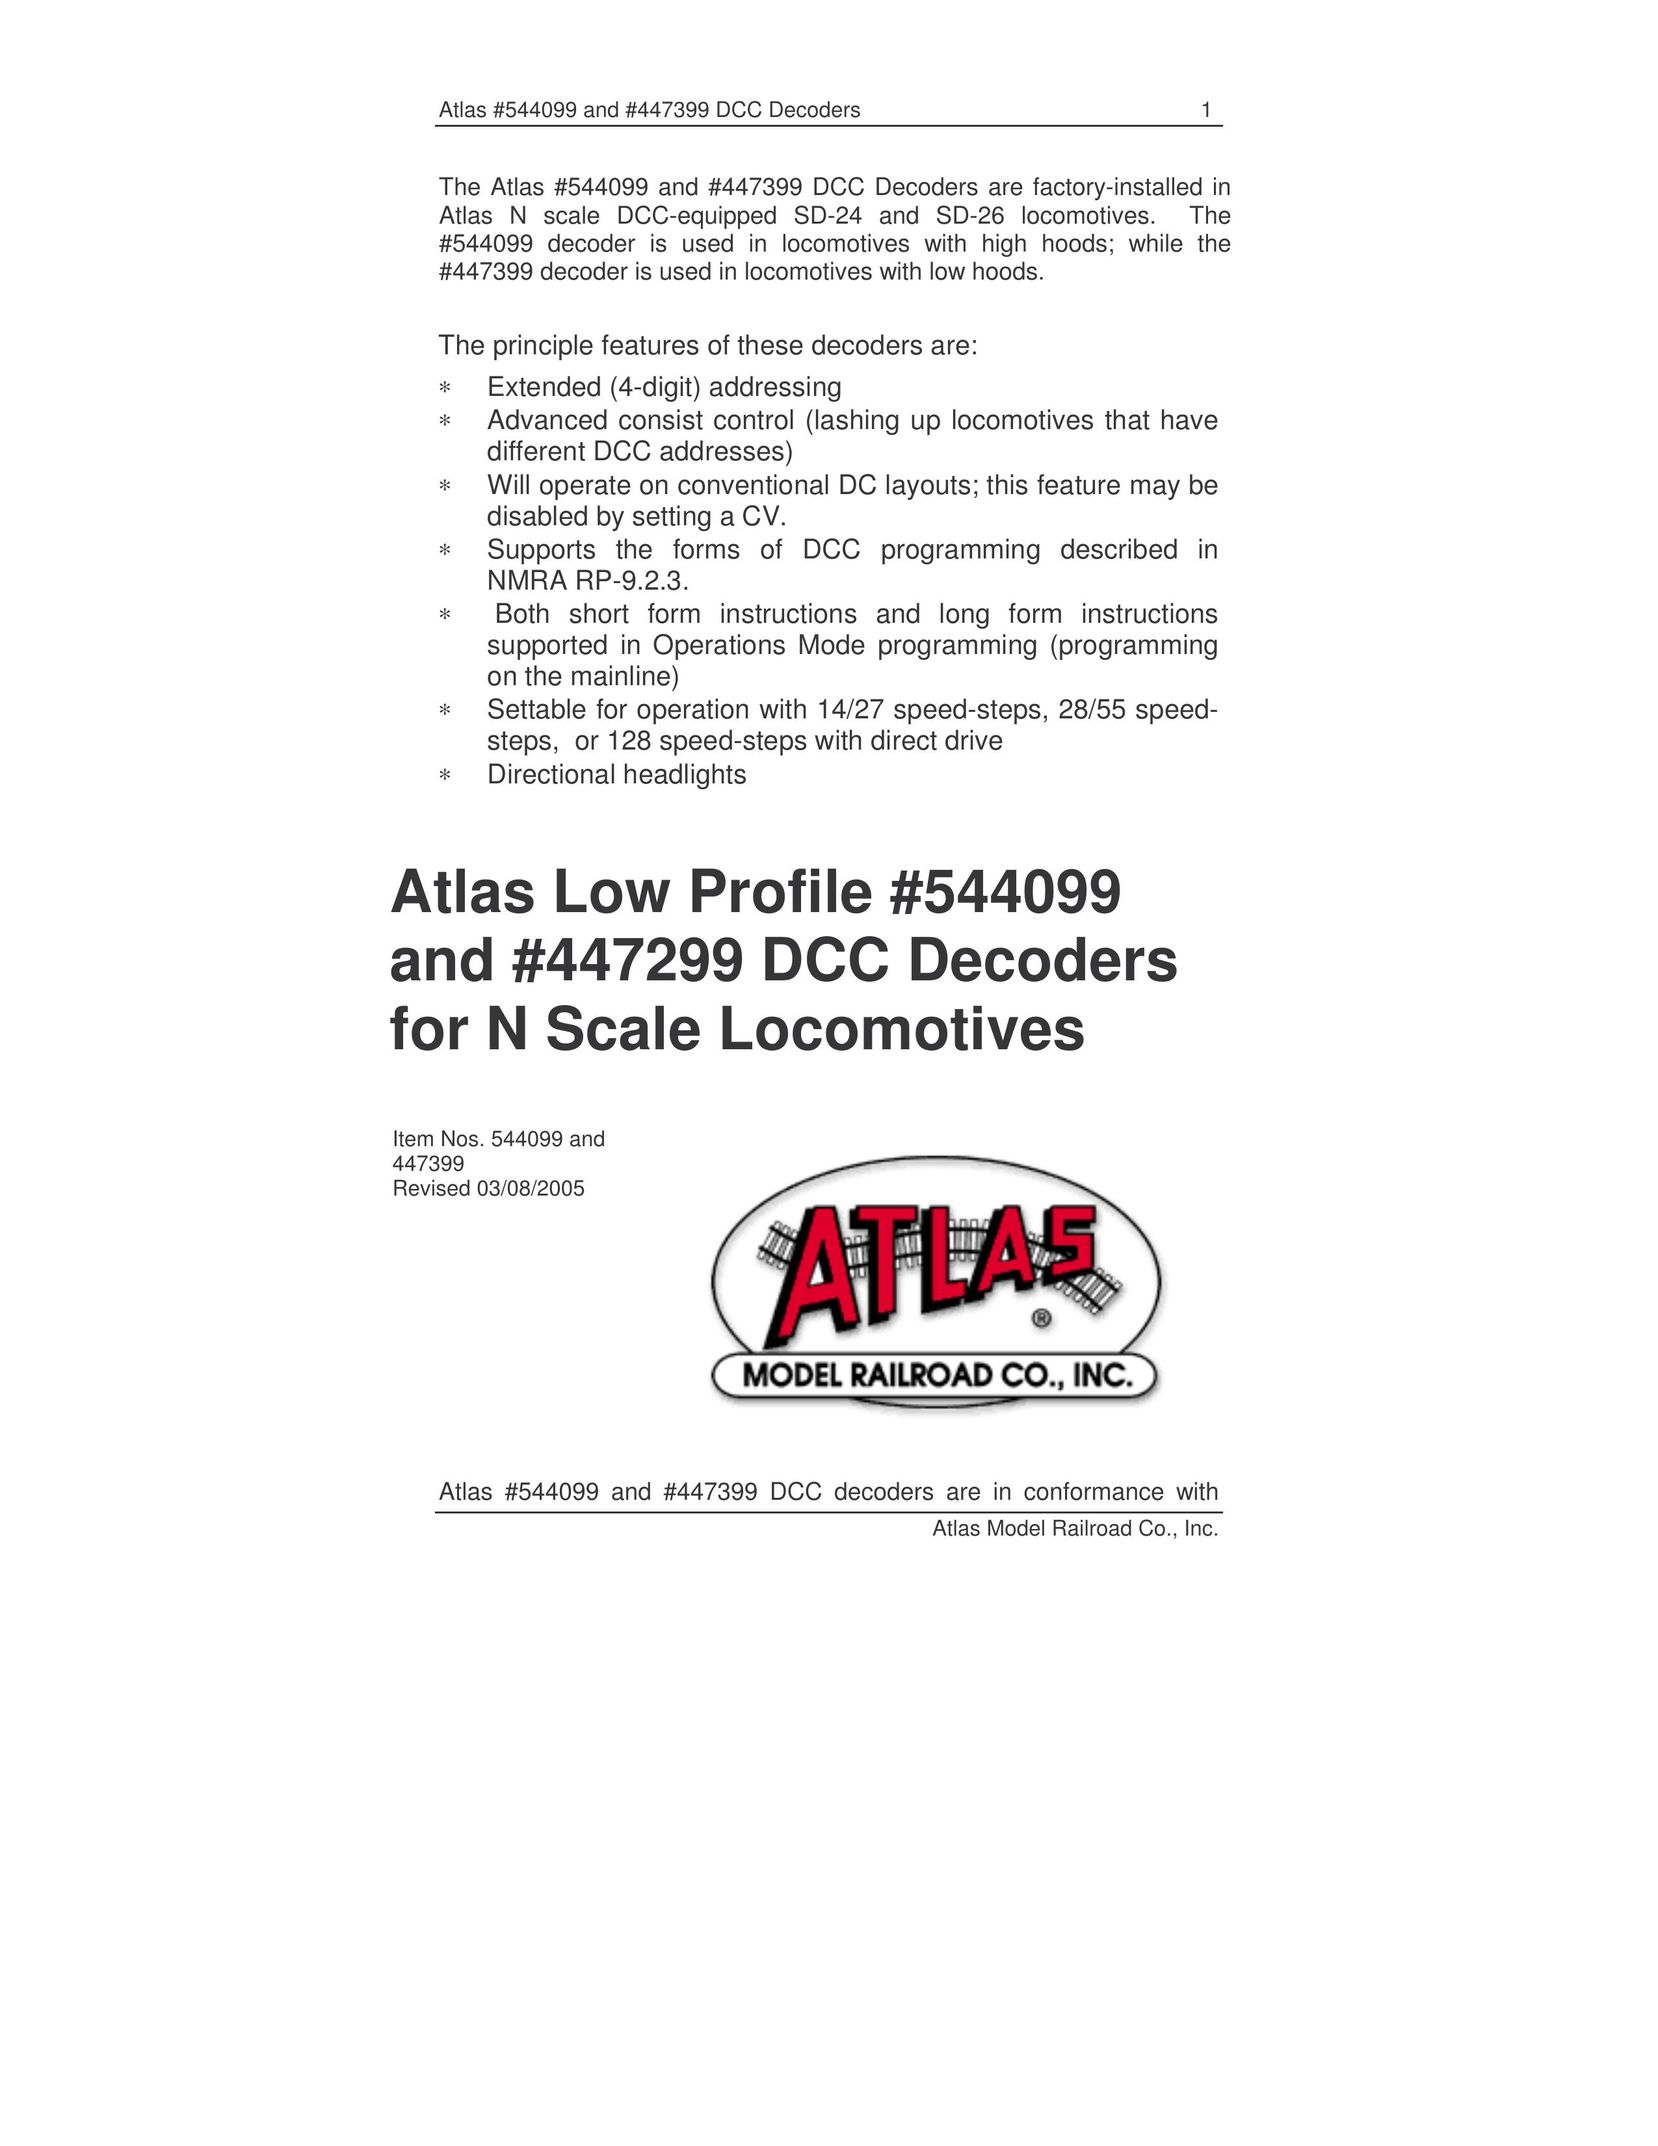 Atlas 447299 Saw User Manual